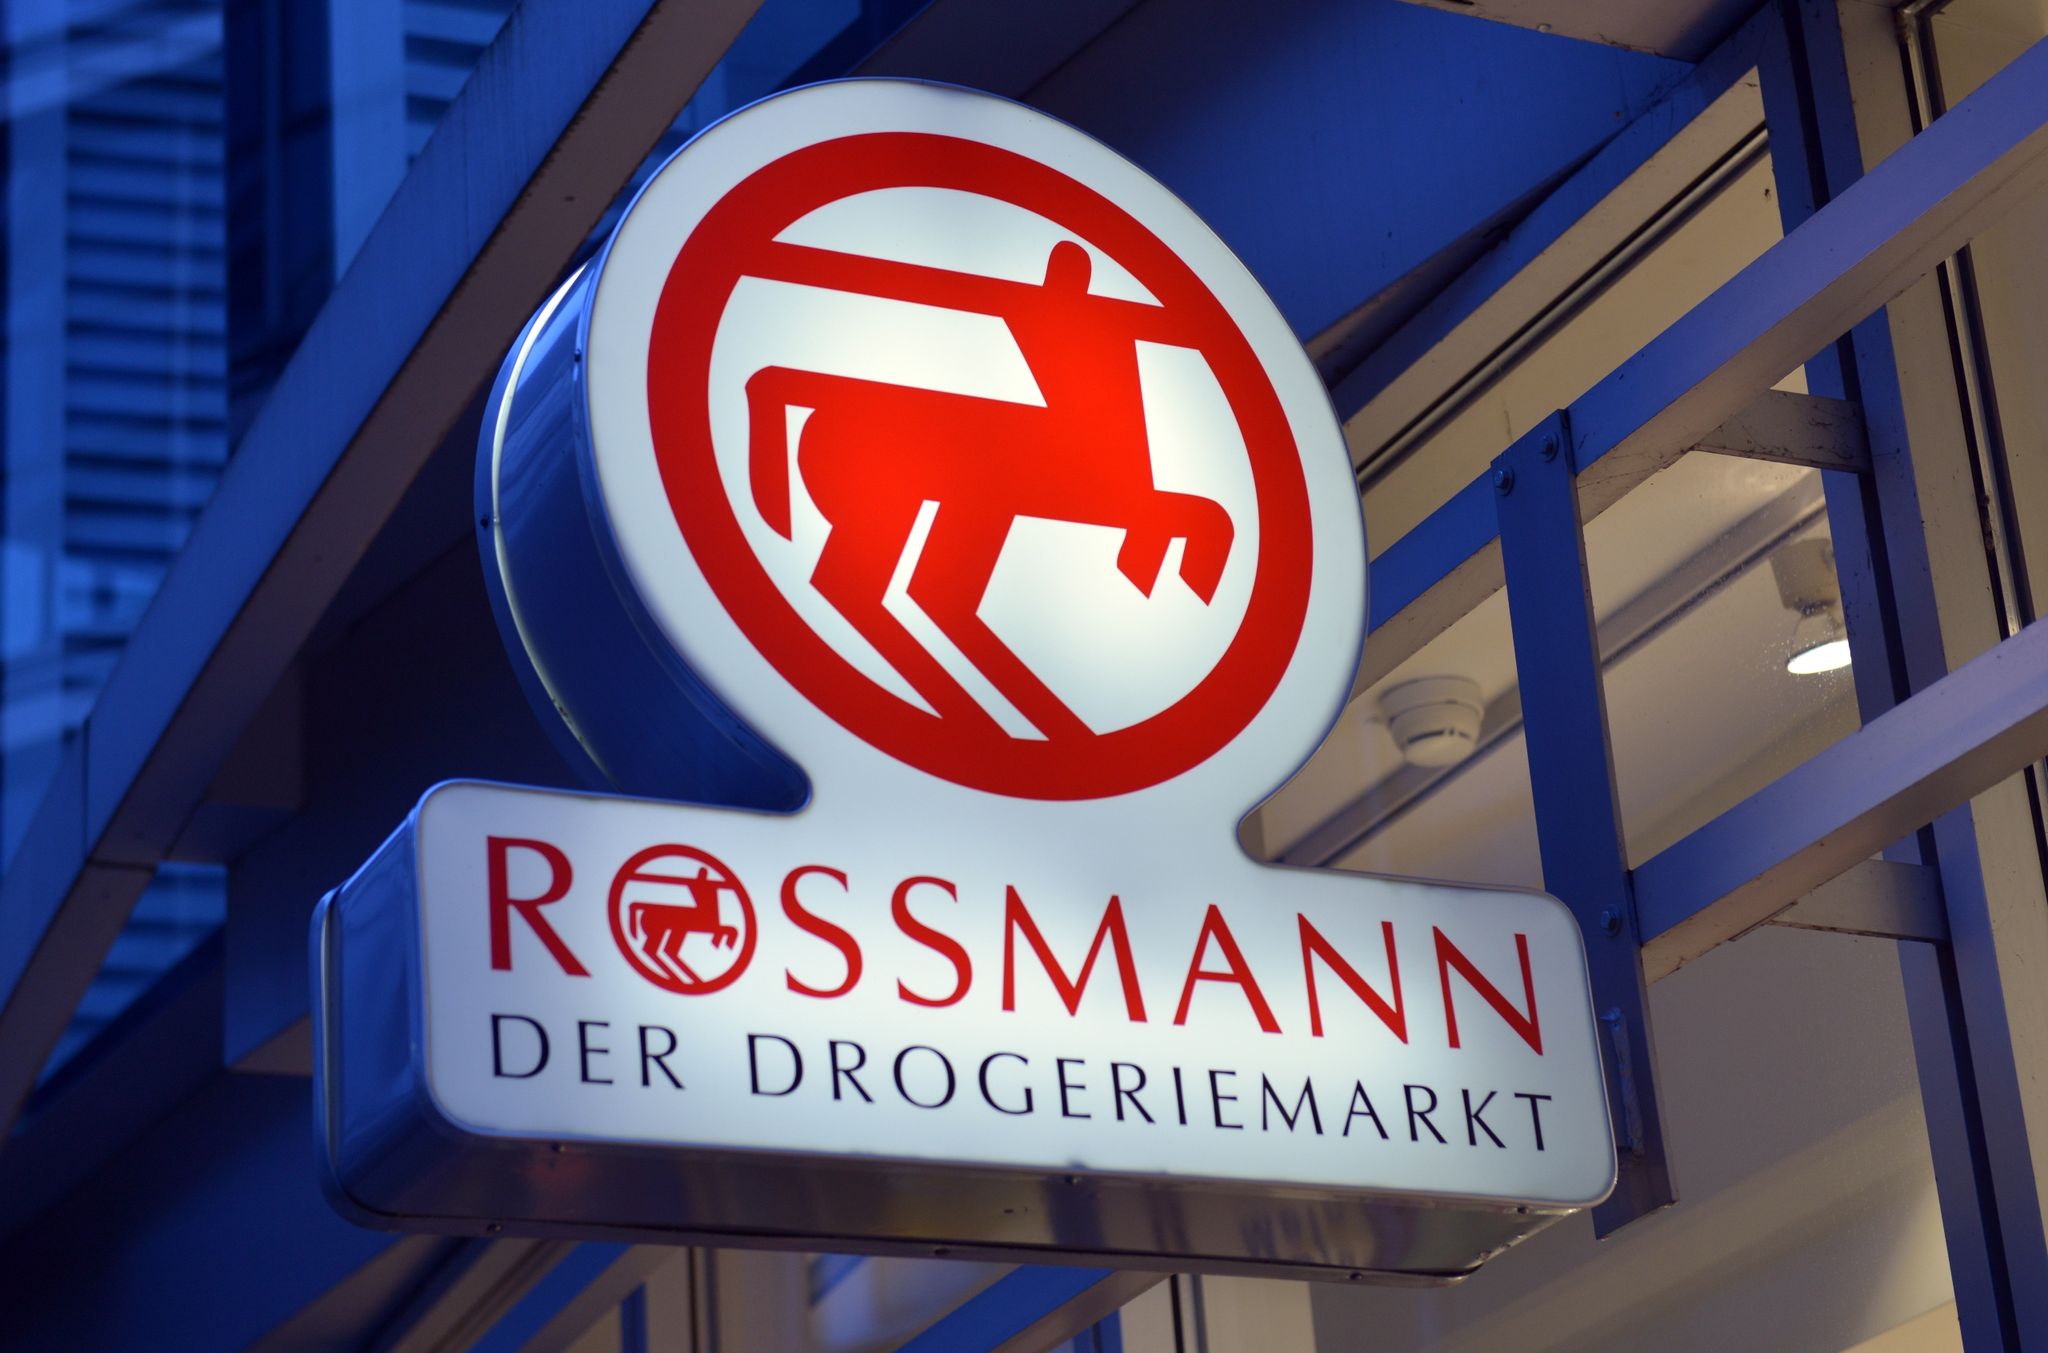 Ein Schild mit der Aufschrift "Rossmann - Der Drogeriemarkt".